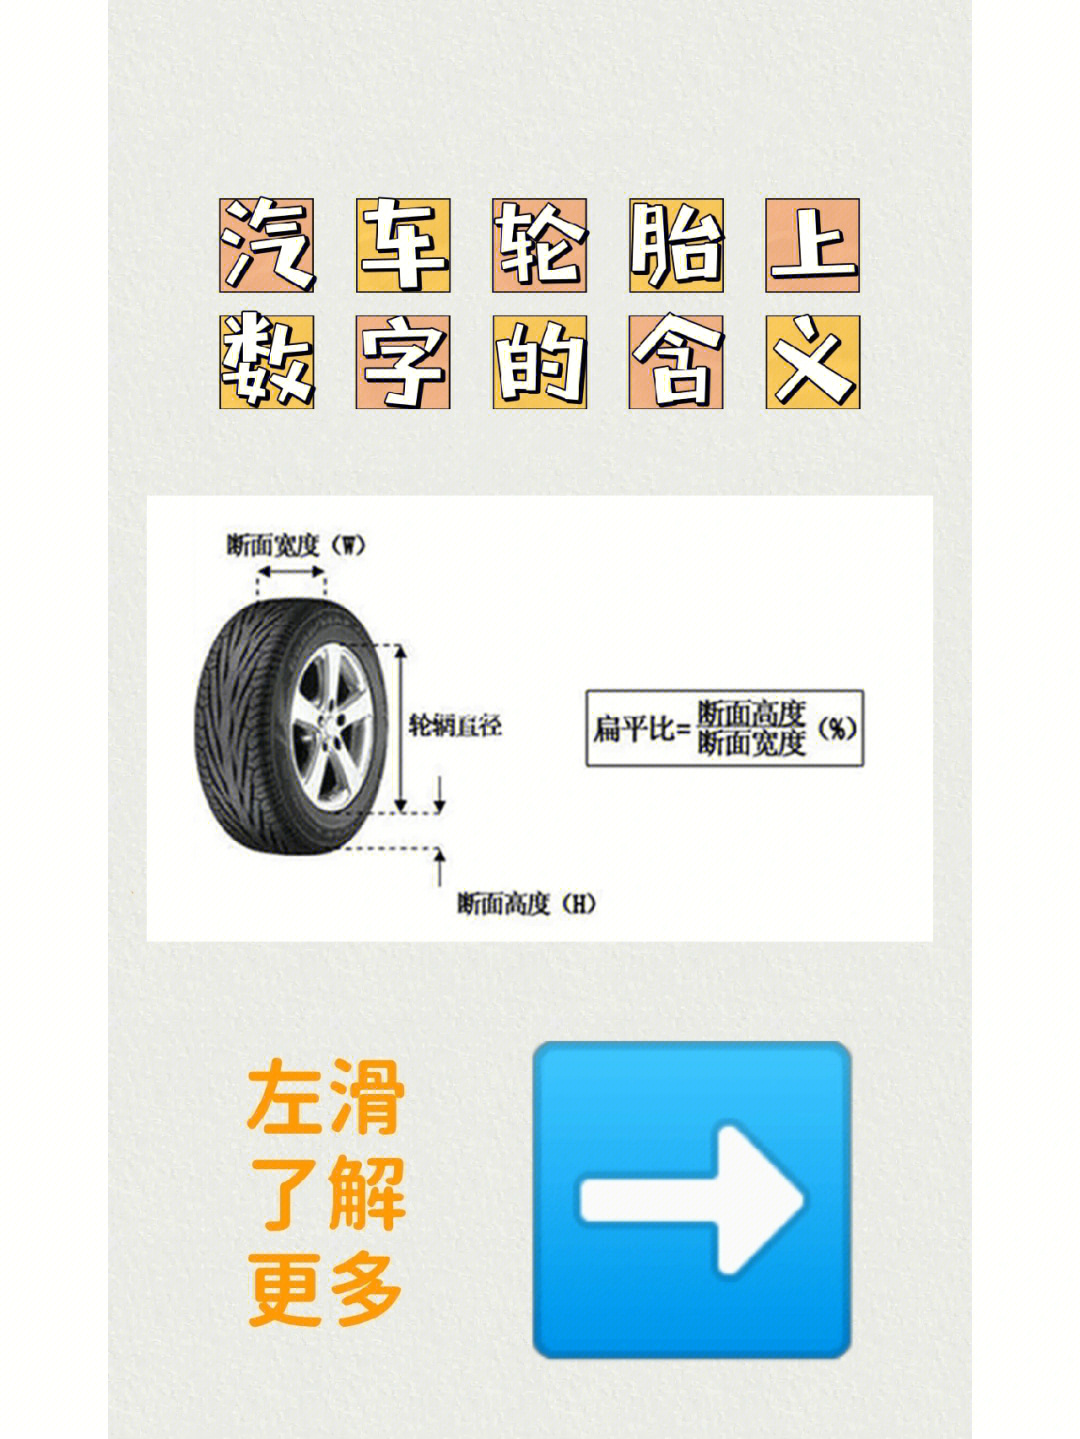 轮胎数字和字母对照表图片